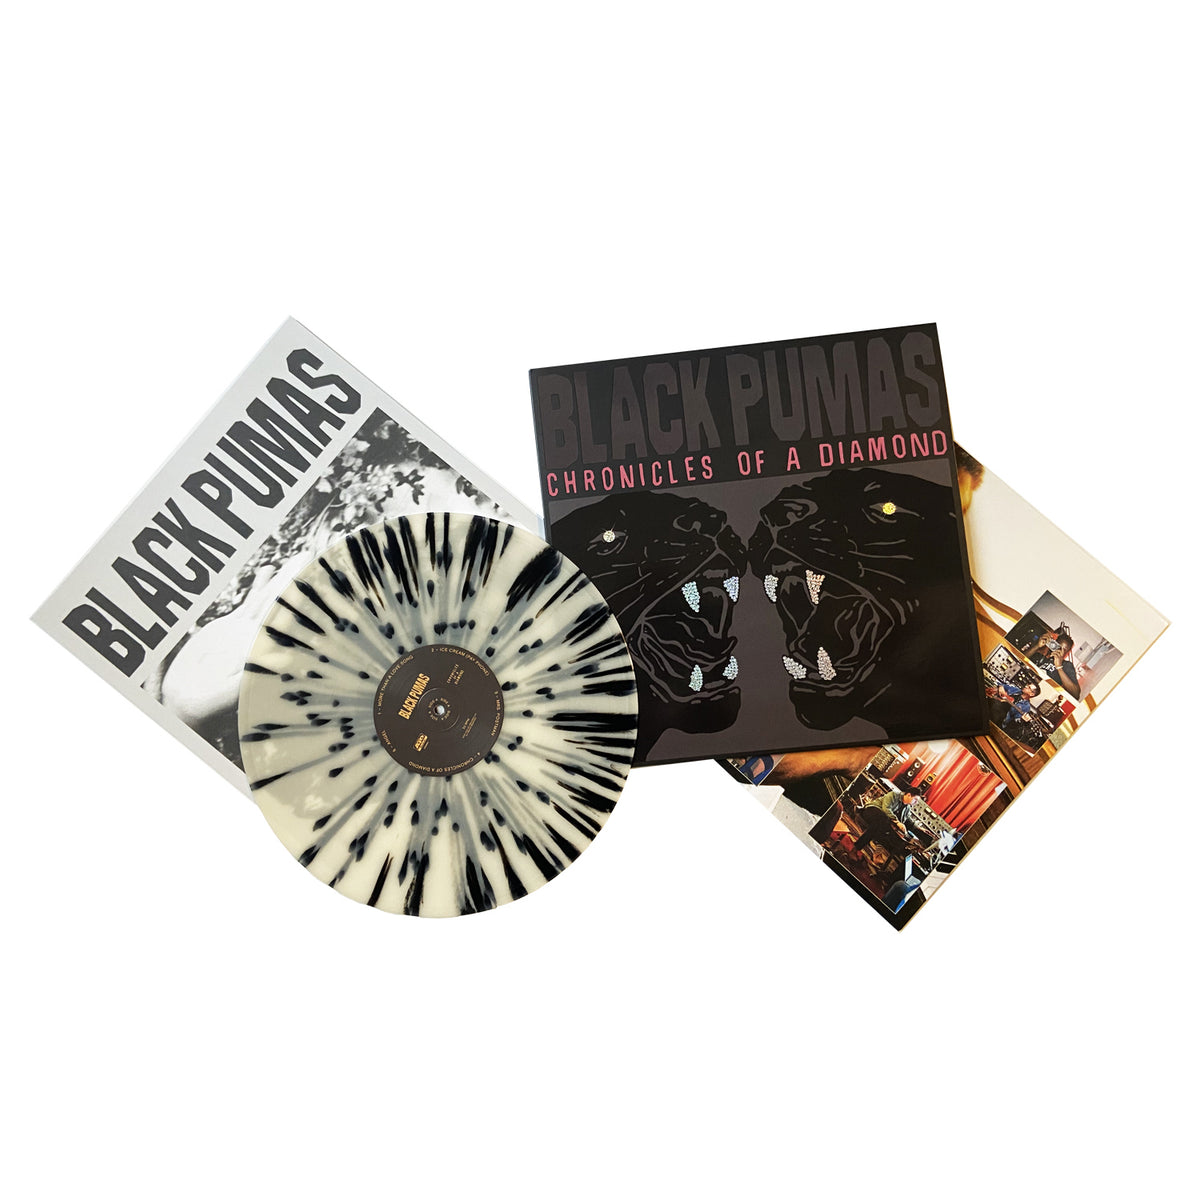 Black Pumas - Black Pumas [2 LP/7 Single Deluxe Edition] -  Music